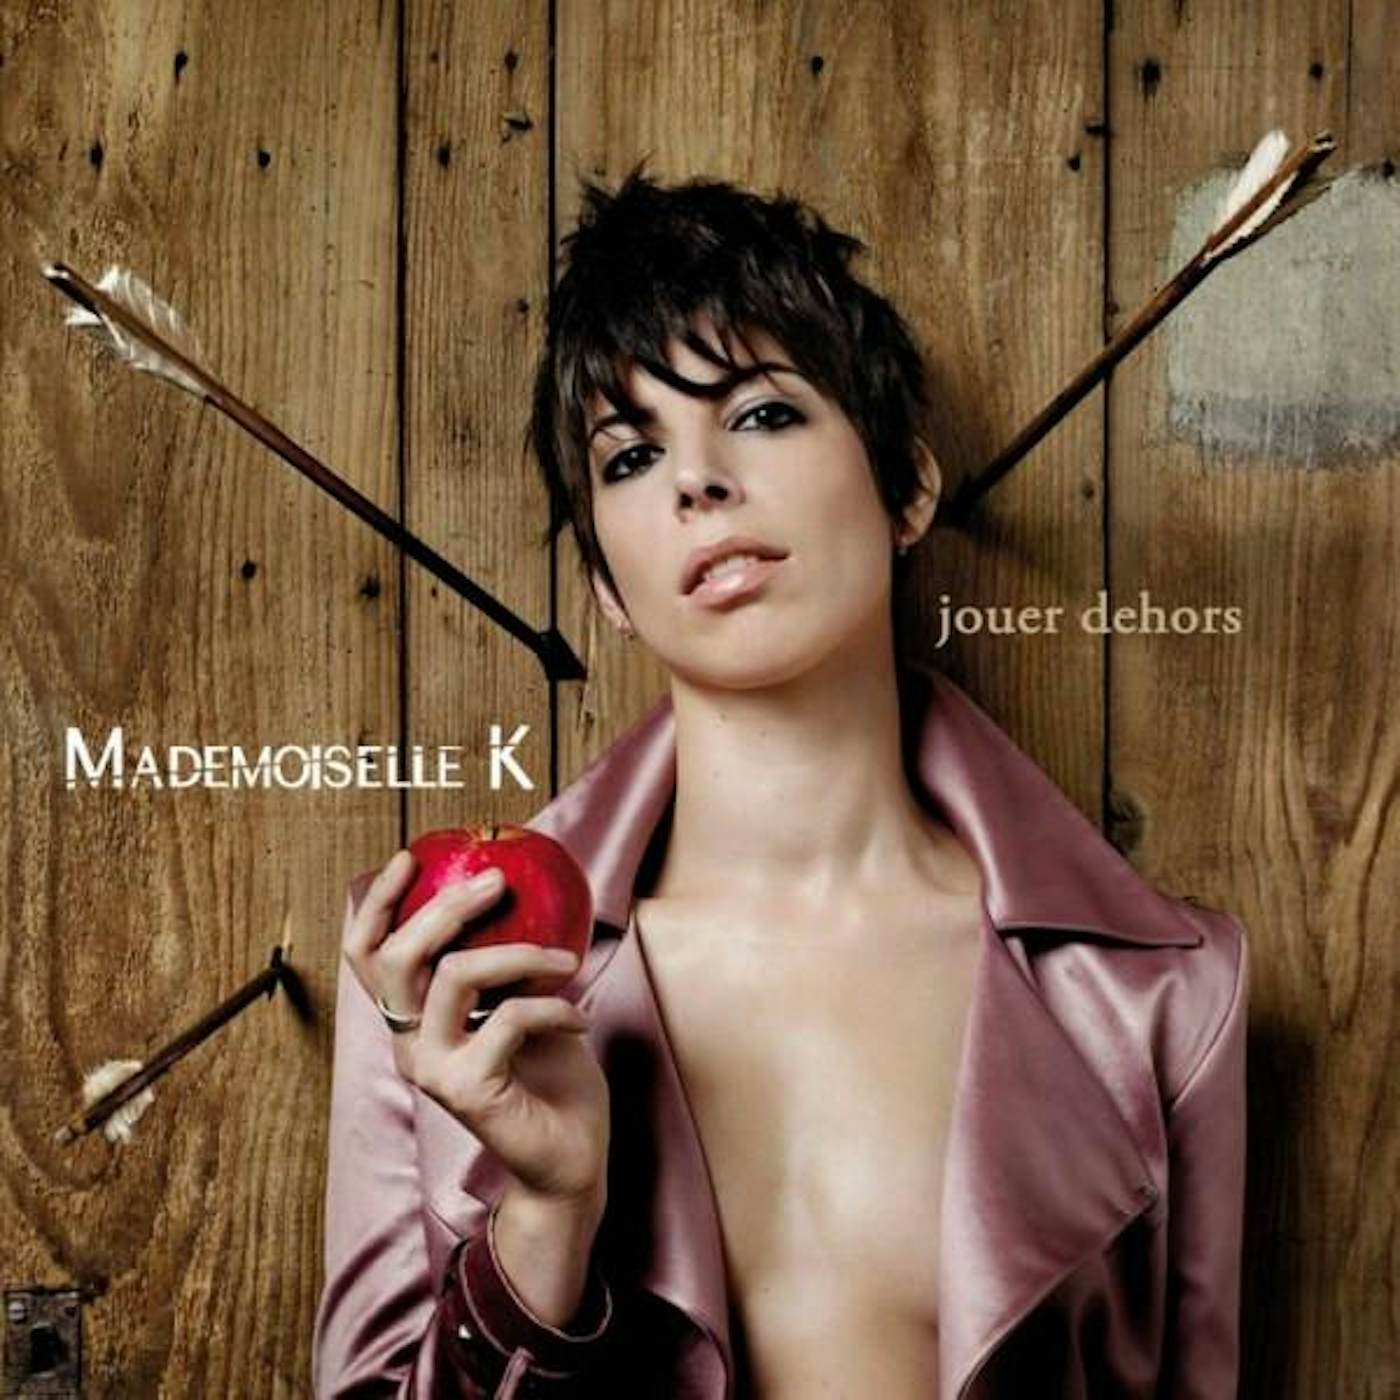 Mademoiselle K JOUER DEHORS CD